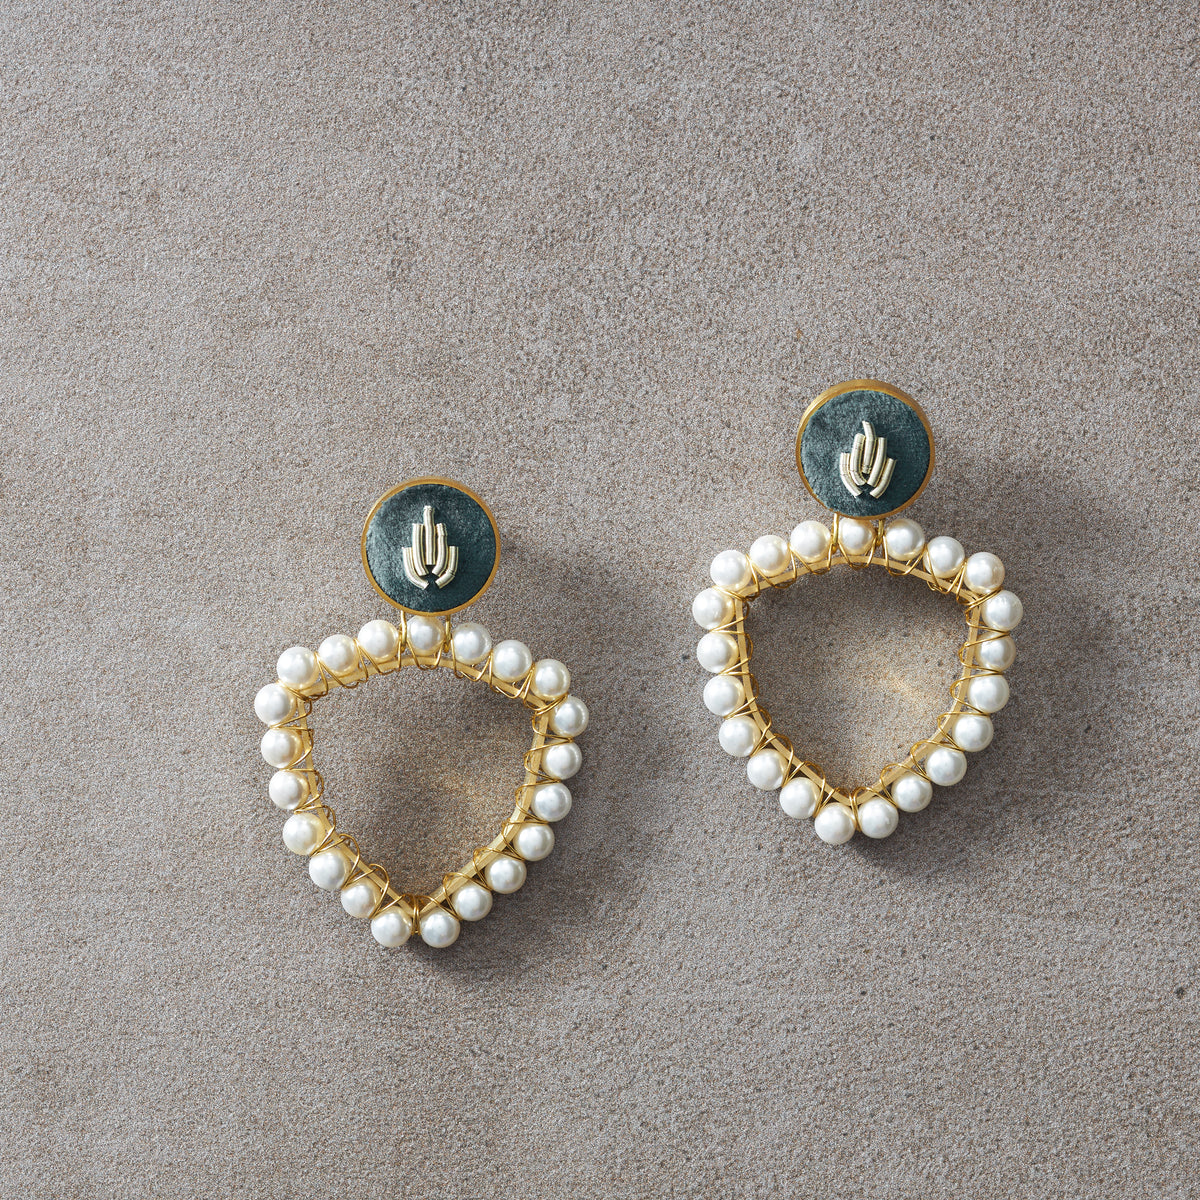 Vintage inspired statement pearl earrings ZIB007